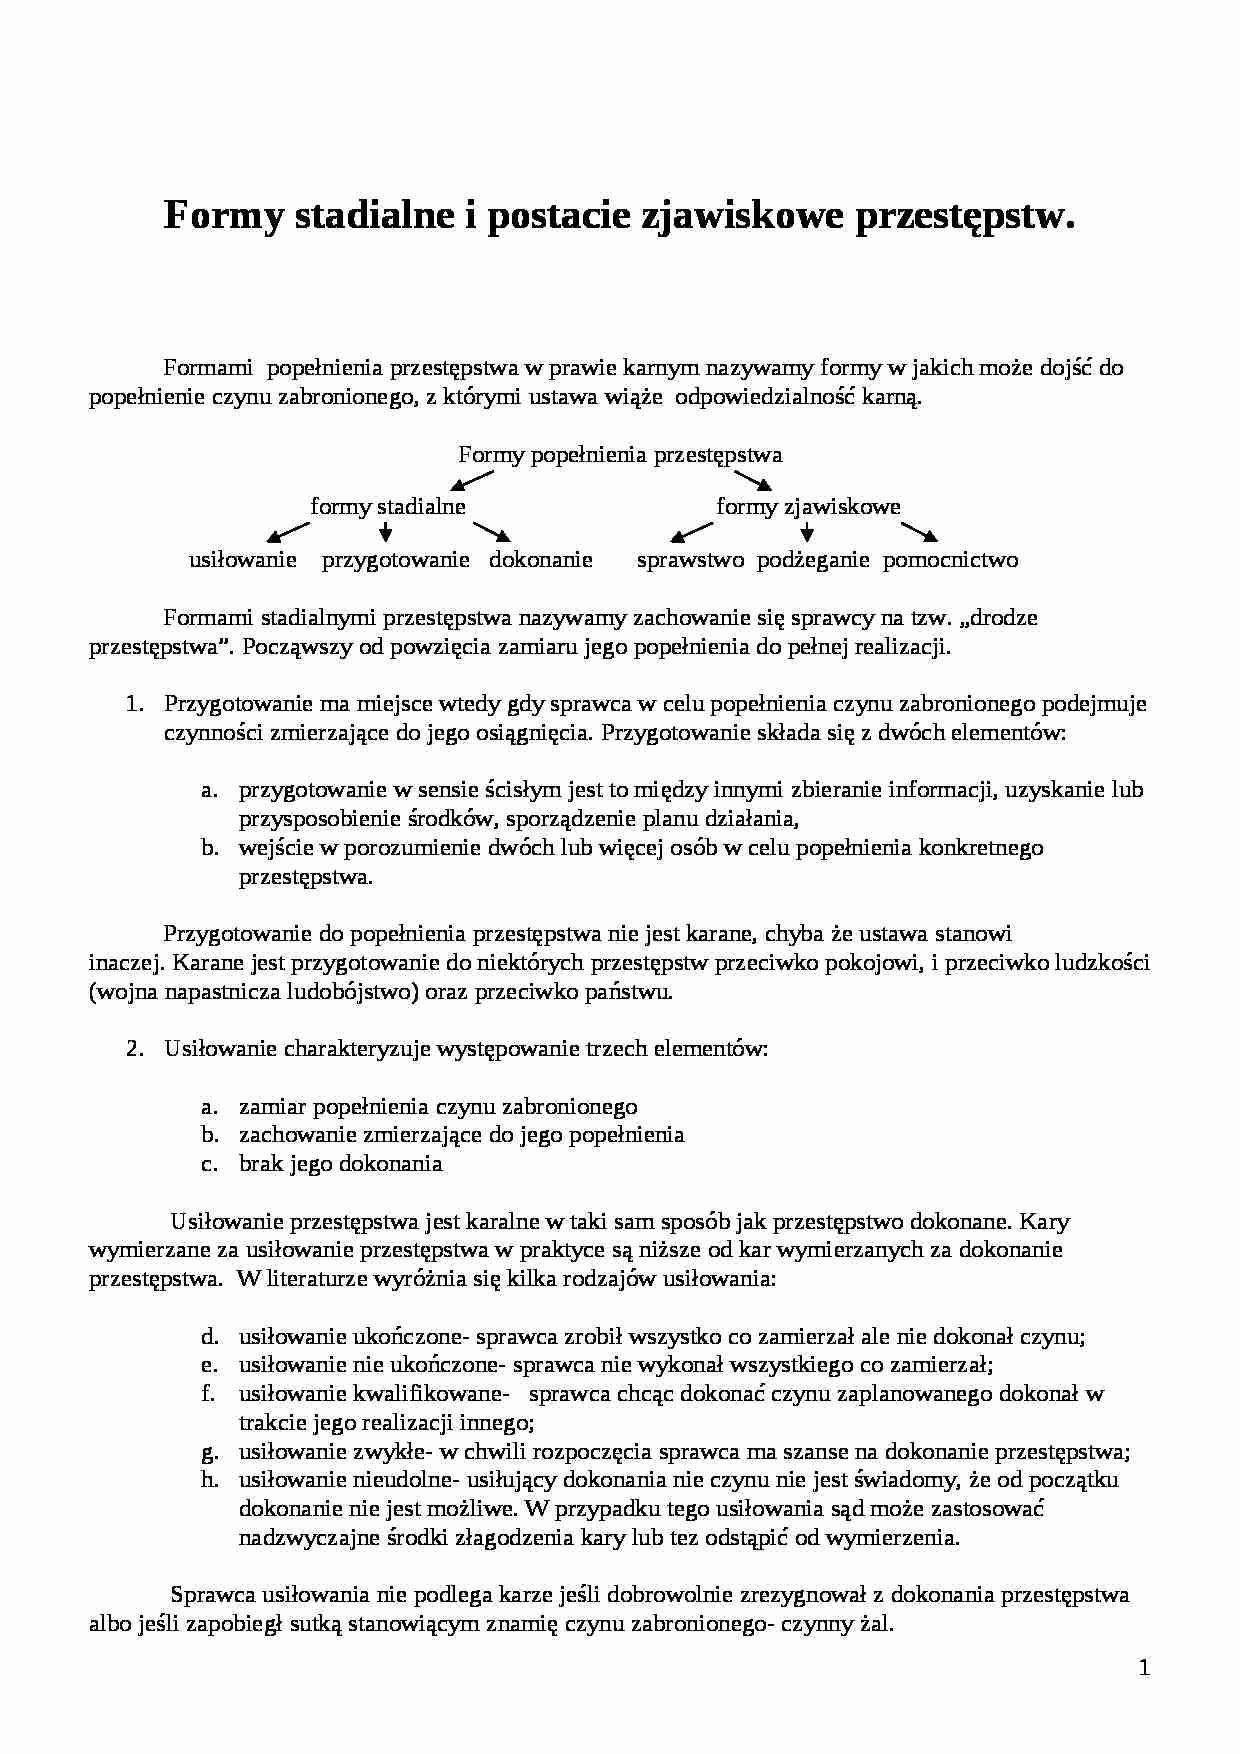 Formy stadialne i postacie zjawiskowe przestepstw  - Prawo  - strona 1